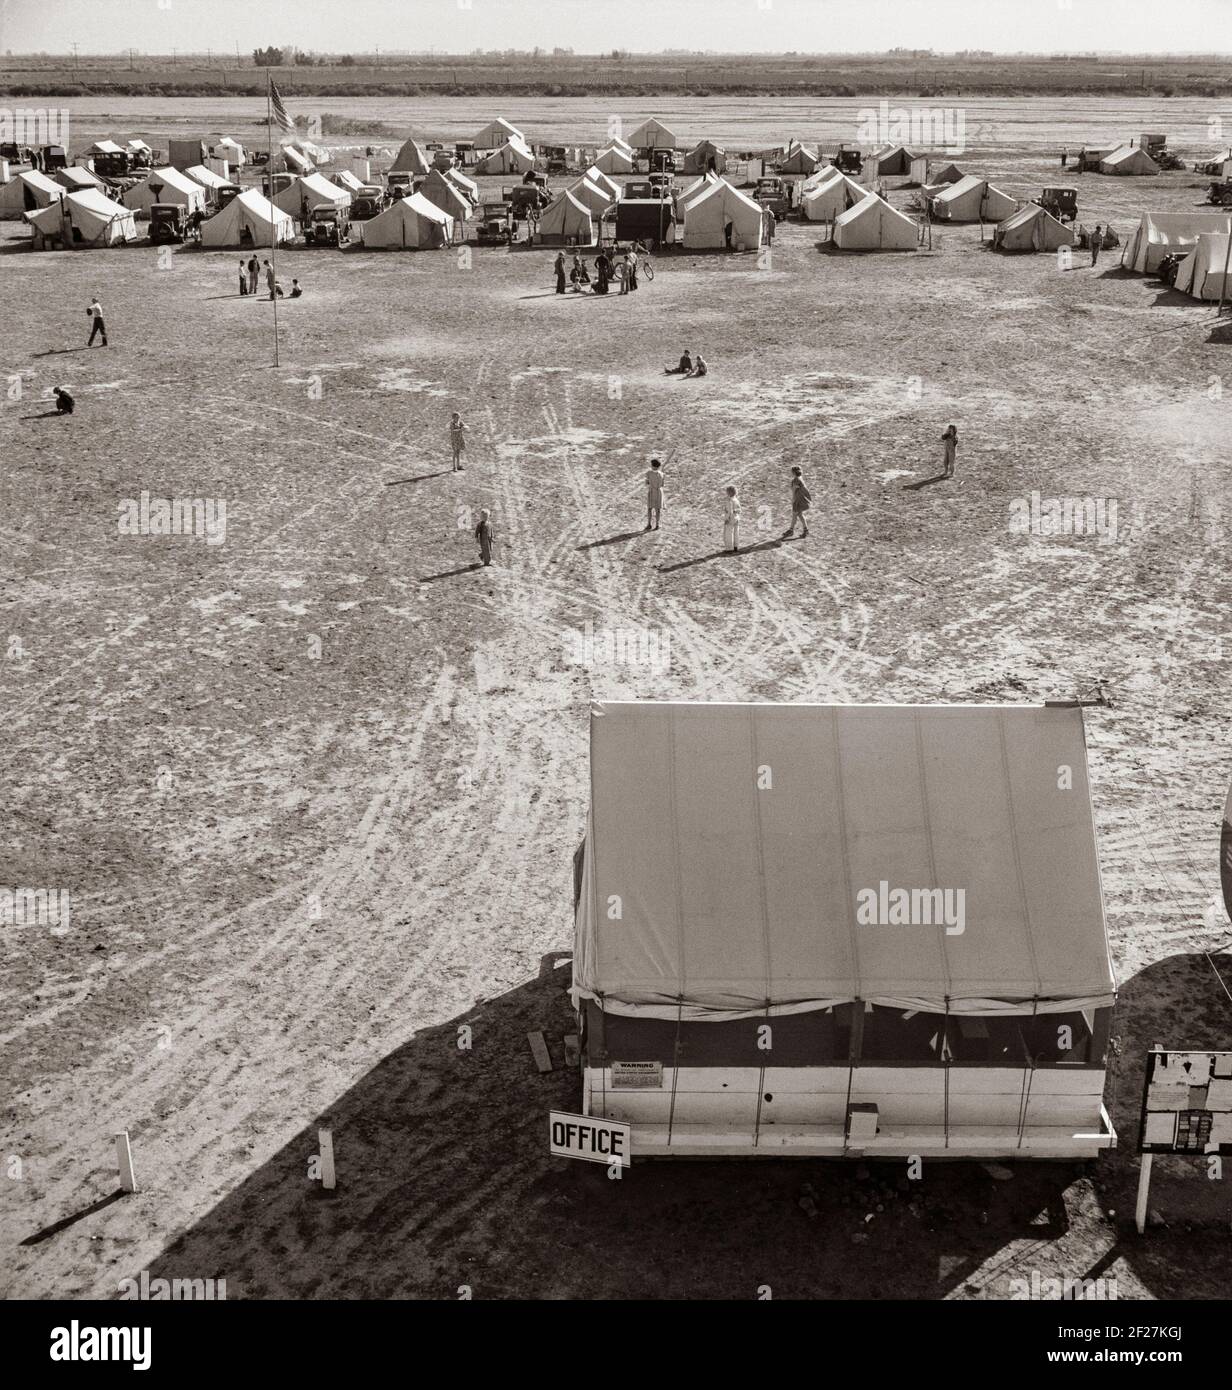 Administration de la sécurité agricole (FSA) camp de travail migratoire. Calipatria, Imperial Valley, Californie . Février 1936. Photo de Dorothea Lange Banque D'Images